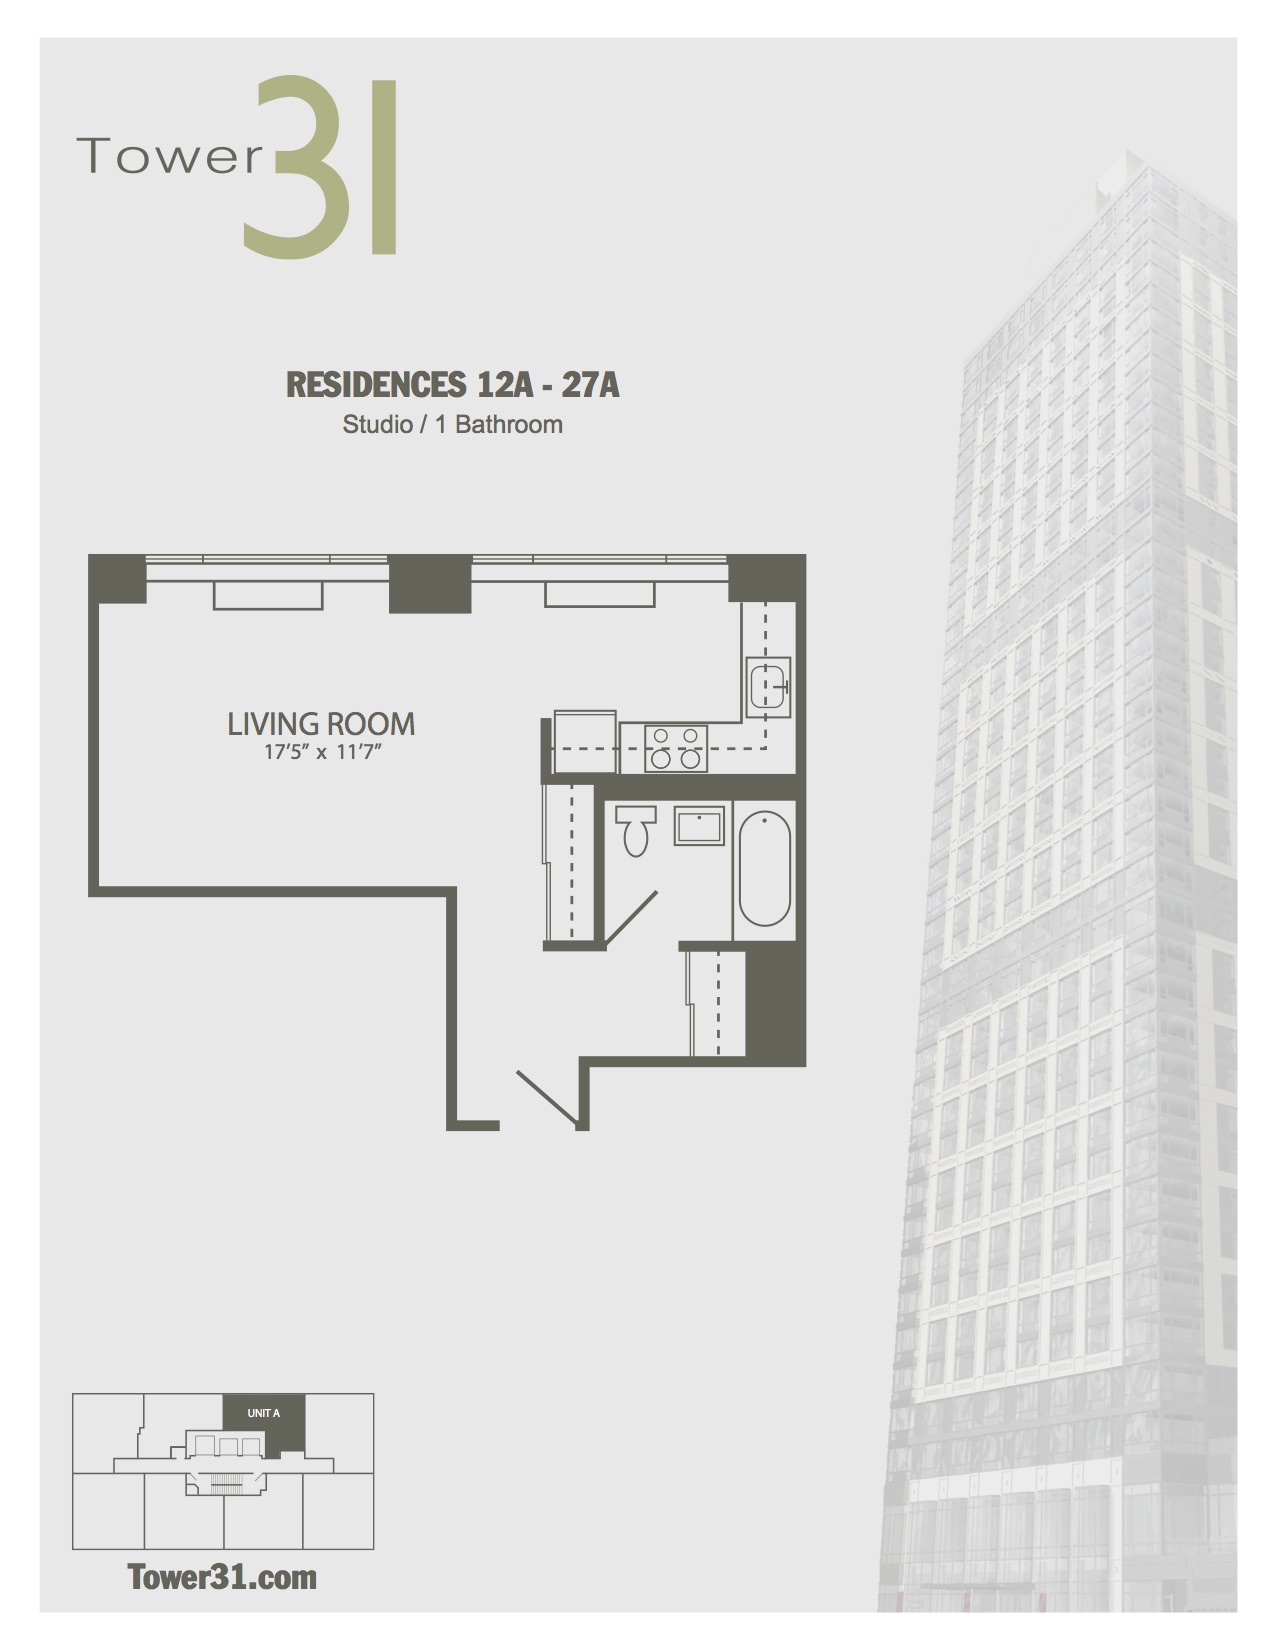 Residence A Floors 12-27